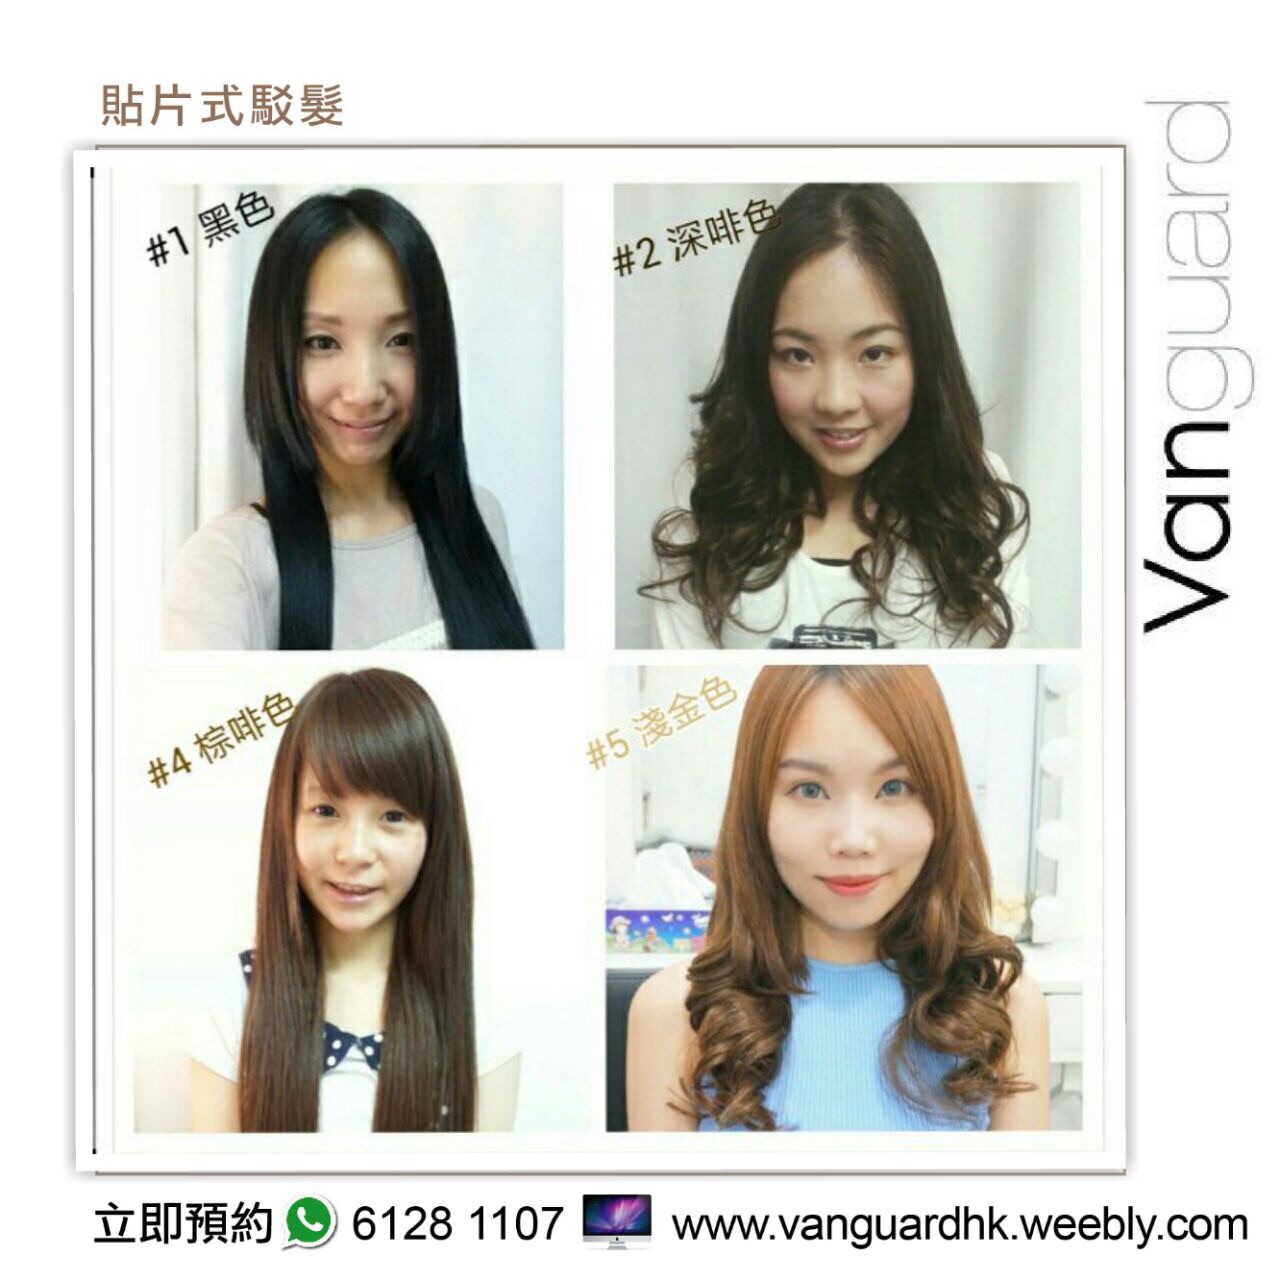 髮型屋: Vanguard HK 無痕貼片式駁髮專門店